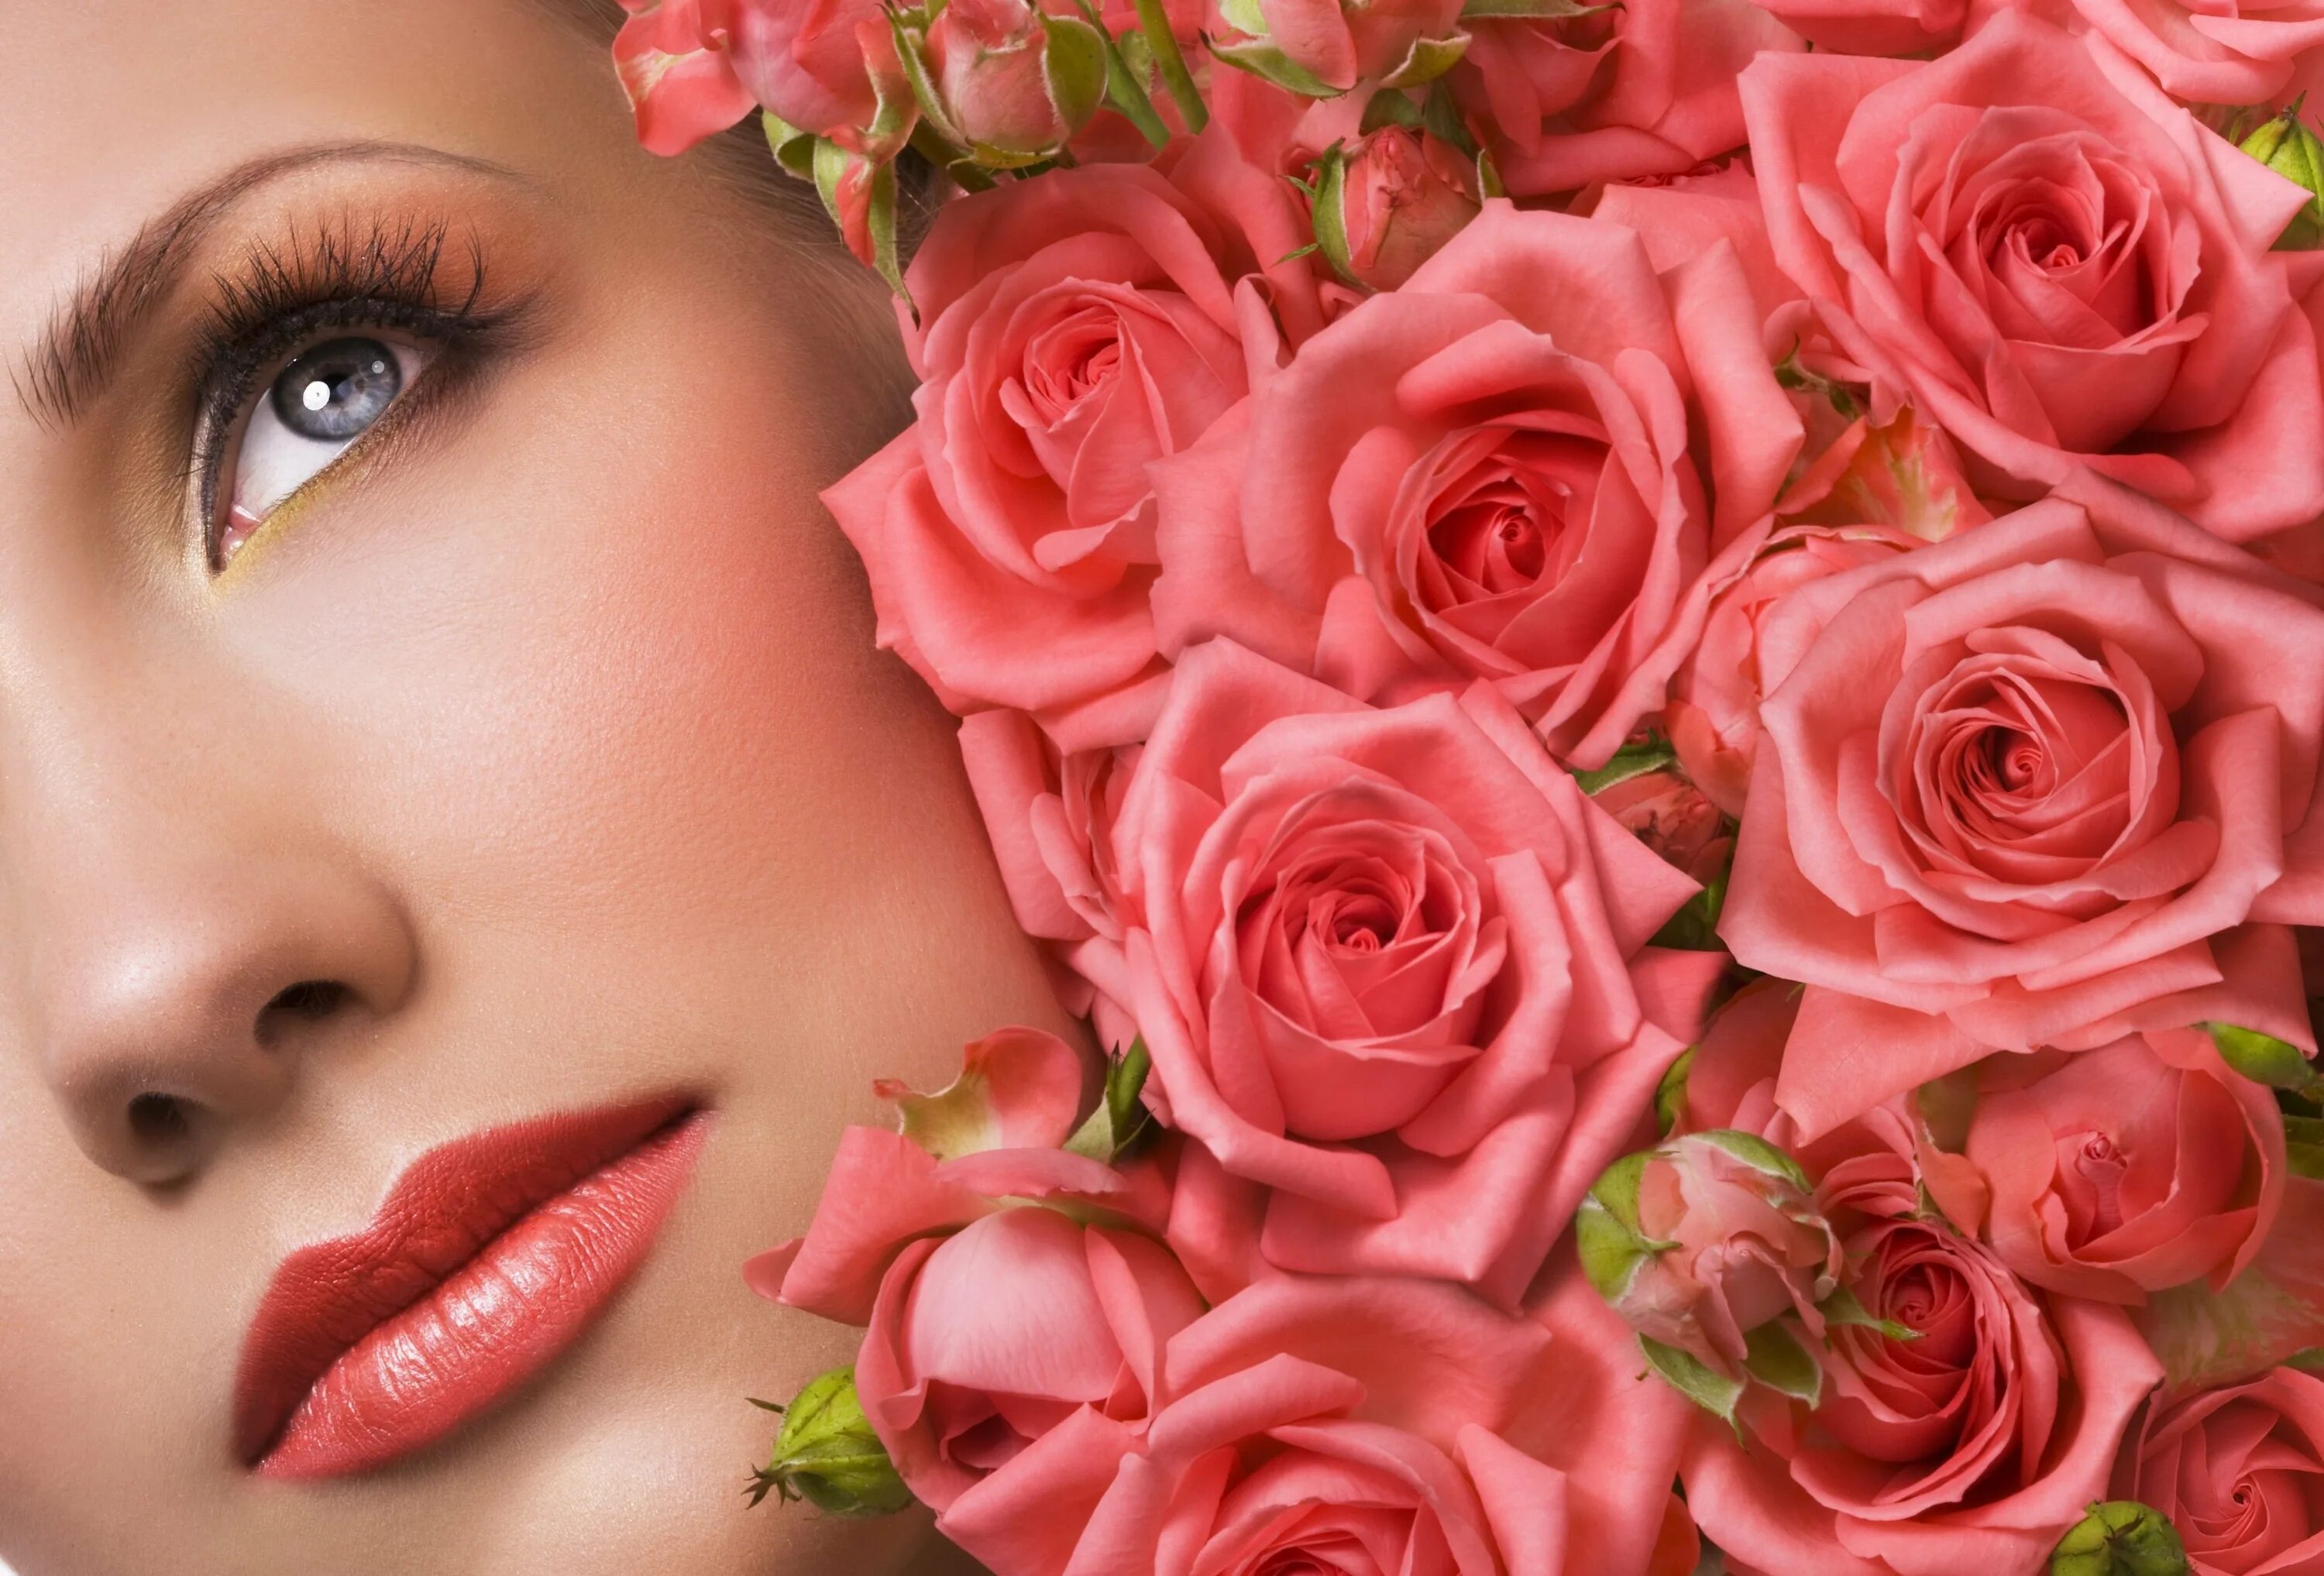 Цветы для женщины это. Девушка с розой. Лицо девушки в цветах. Красивая женщина с цветами. Фотосессия с розами.